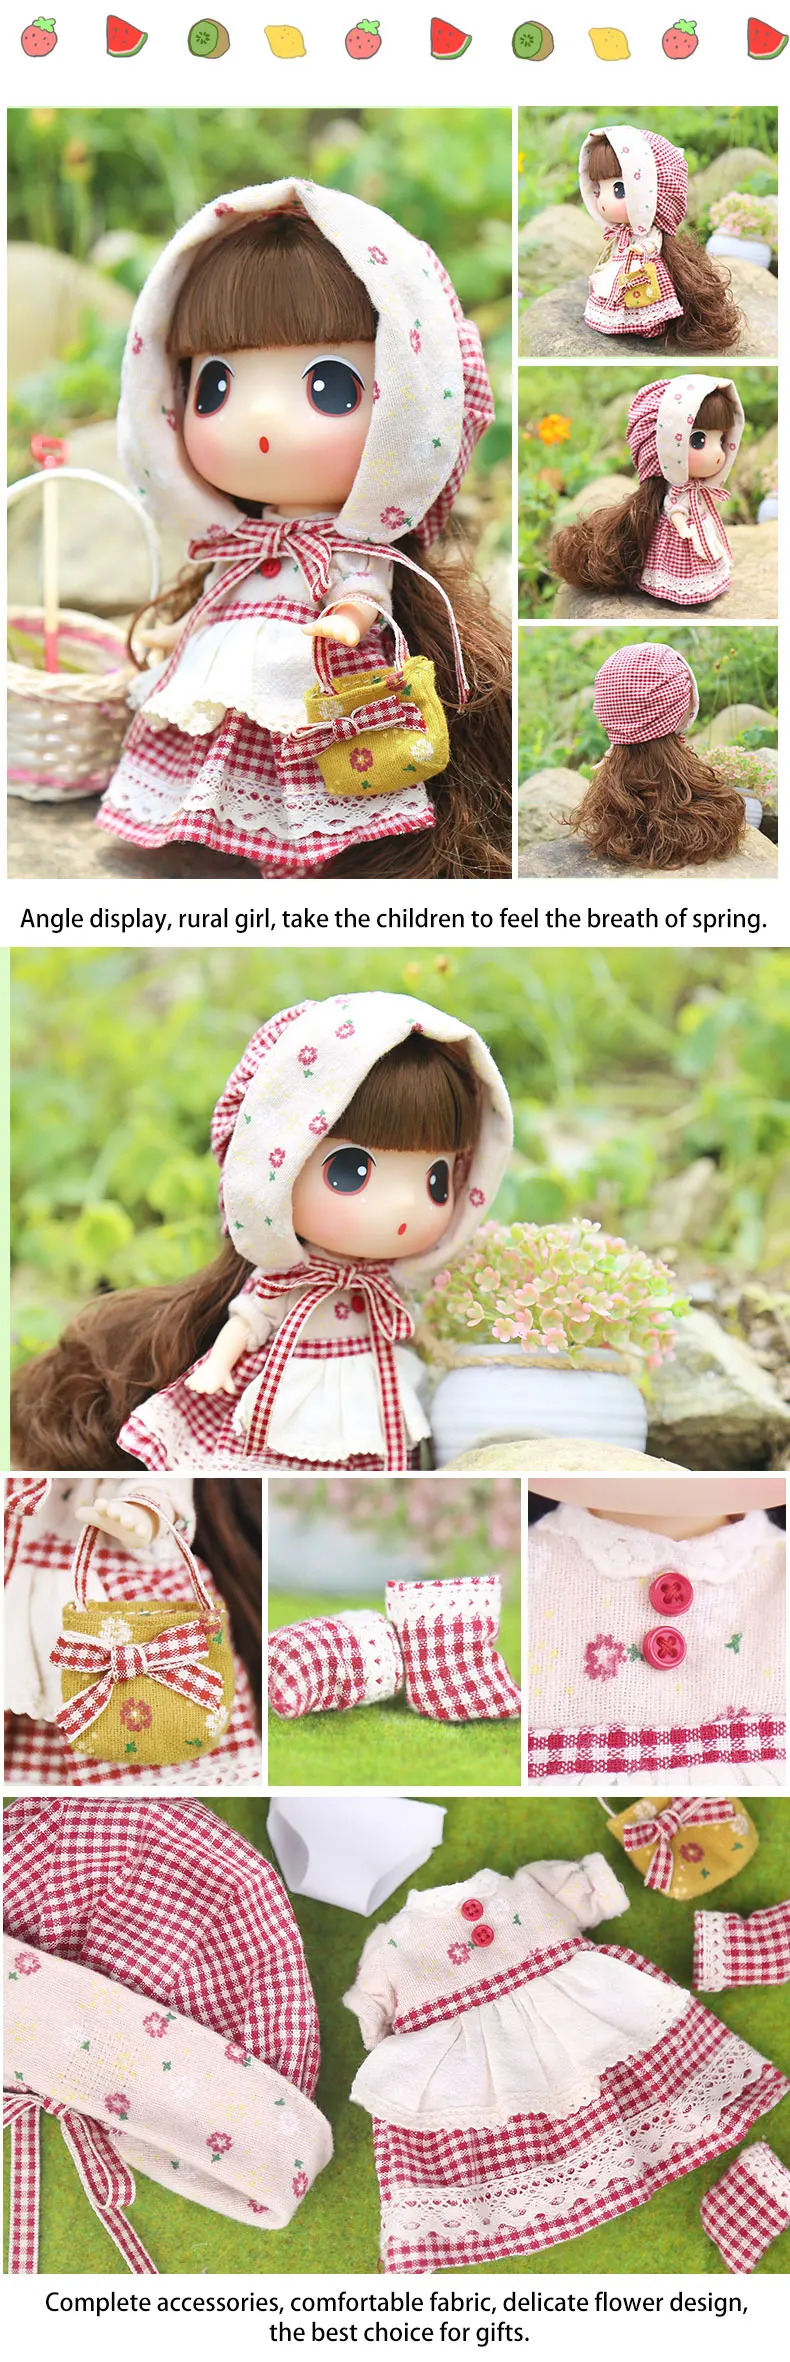 Кукла Ddung детские игрушки 18 см/7 дюймов модные куклы в деревенском стиле принцесса одежда для переодевания на день рождения Рождественские подарки для детей от 3-х лет